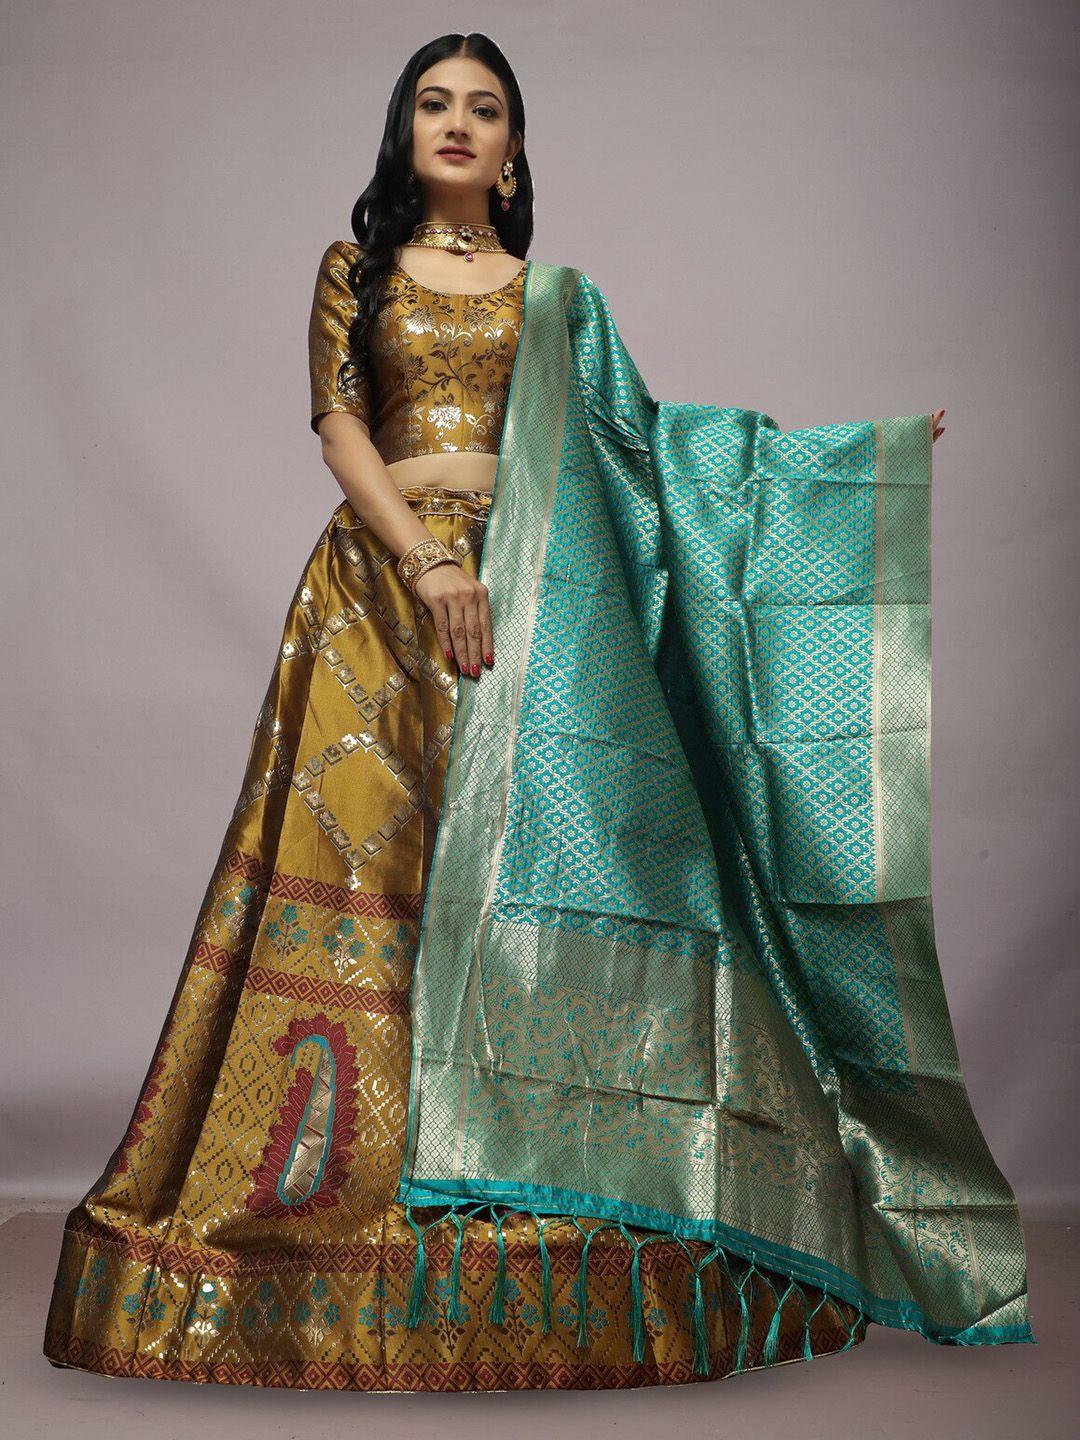 ekta textiles woven design semi-stitched lehenga & blouse with dupatta